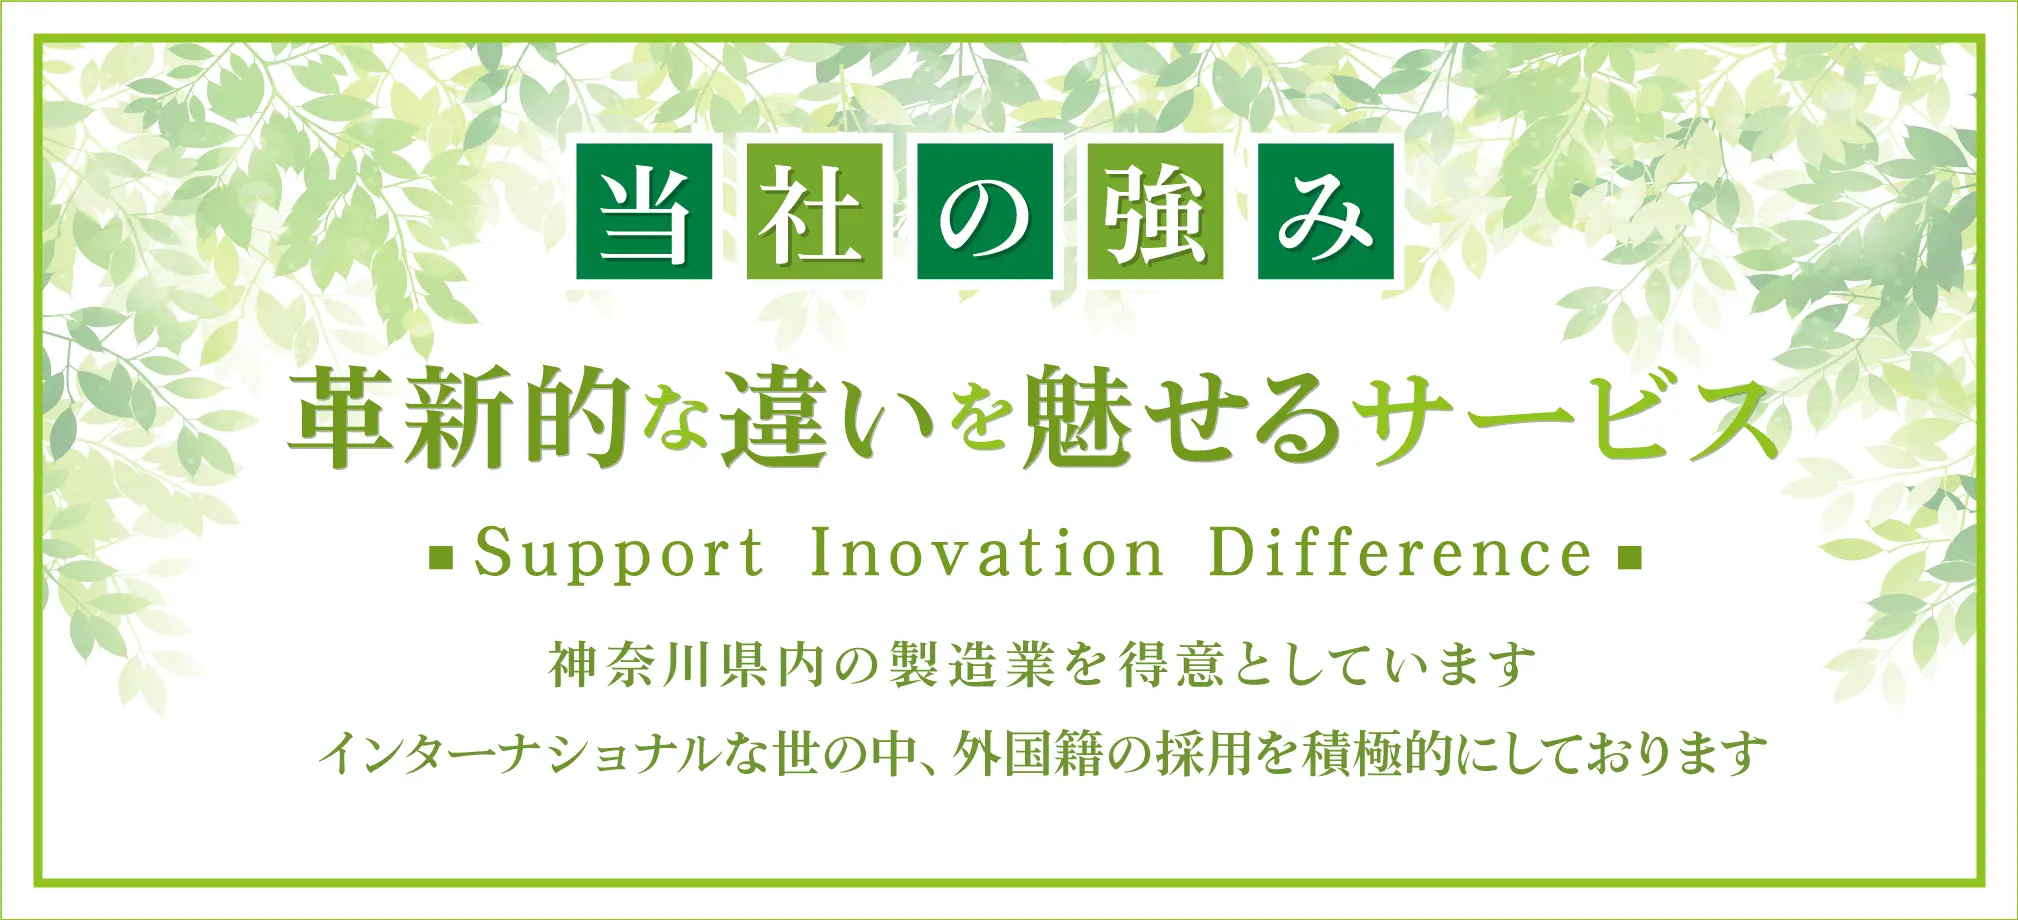 当社の強み 革新的な違いを魅せるサービス Support Inovation Diffrence 神奈川県内の製造業を得意としています インターナショナルな世の中、外国製の採用を積極的にしております